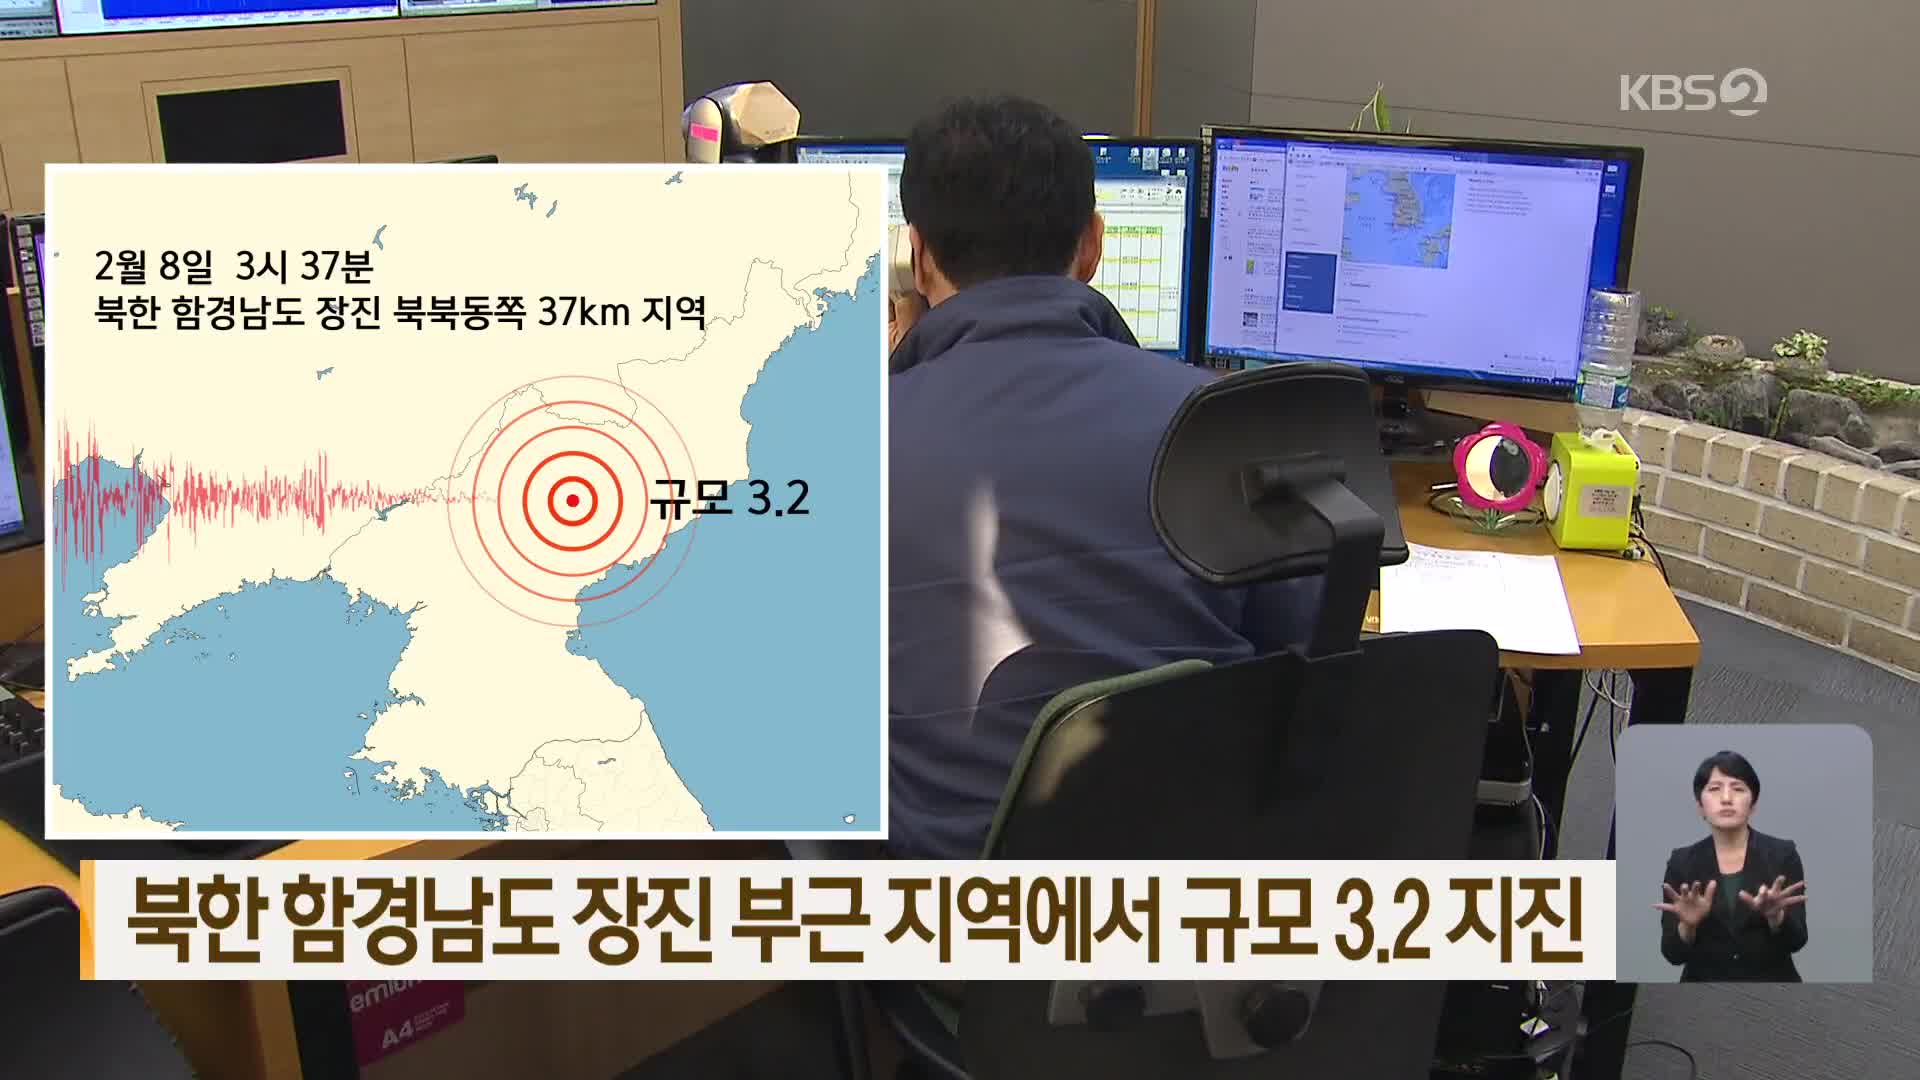 북한 함경남도 장진 부근 지역에서 규모 3.2 지진